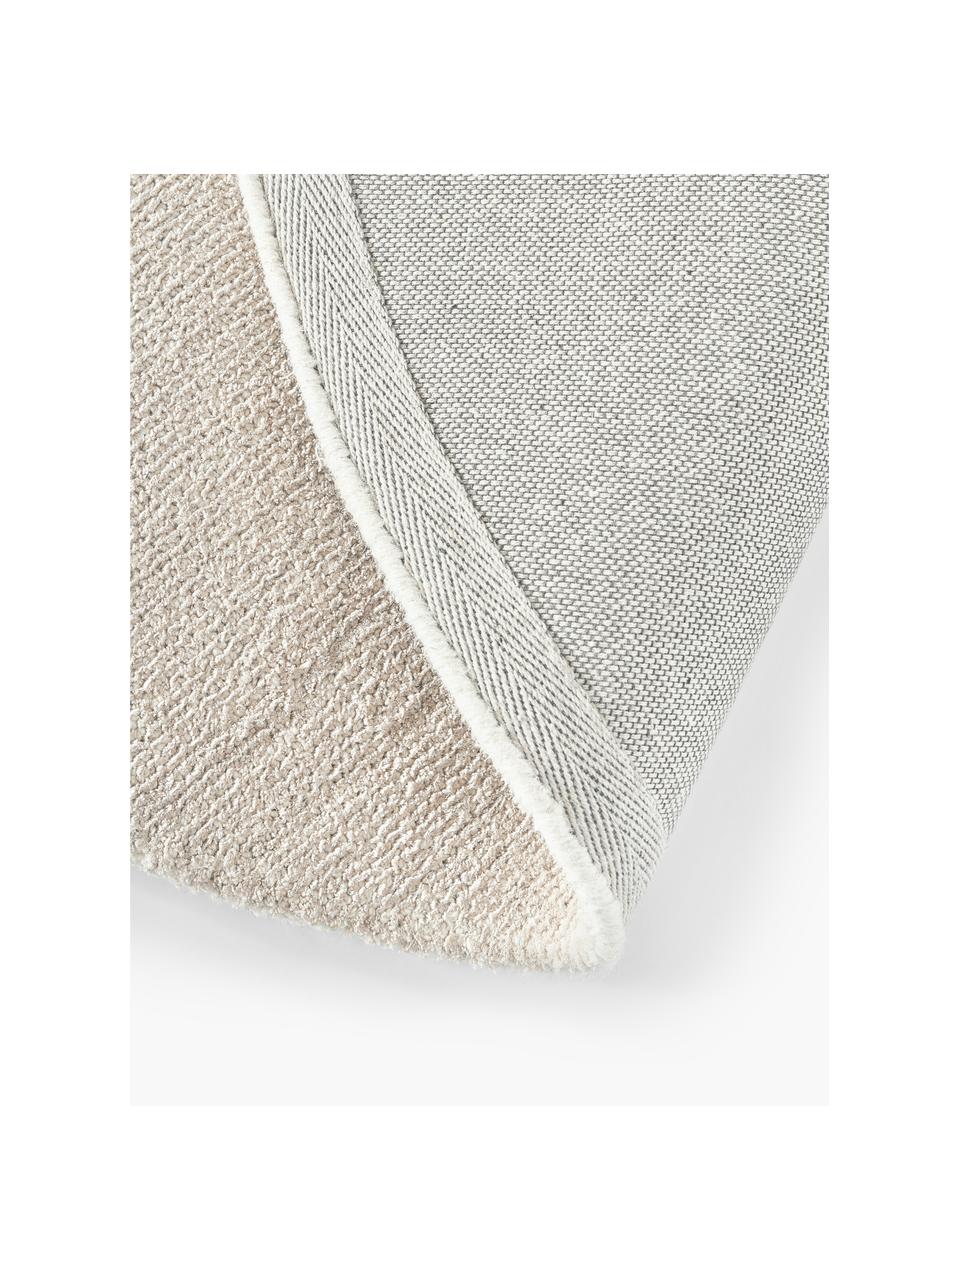 Handgewebter Runder Kurzflor-Teppich Ainsley in Beige, 60 % Polyester, GRS-zertifiziert
40 % Wolle, Beige, Ø 120 cm (Größe S)